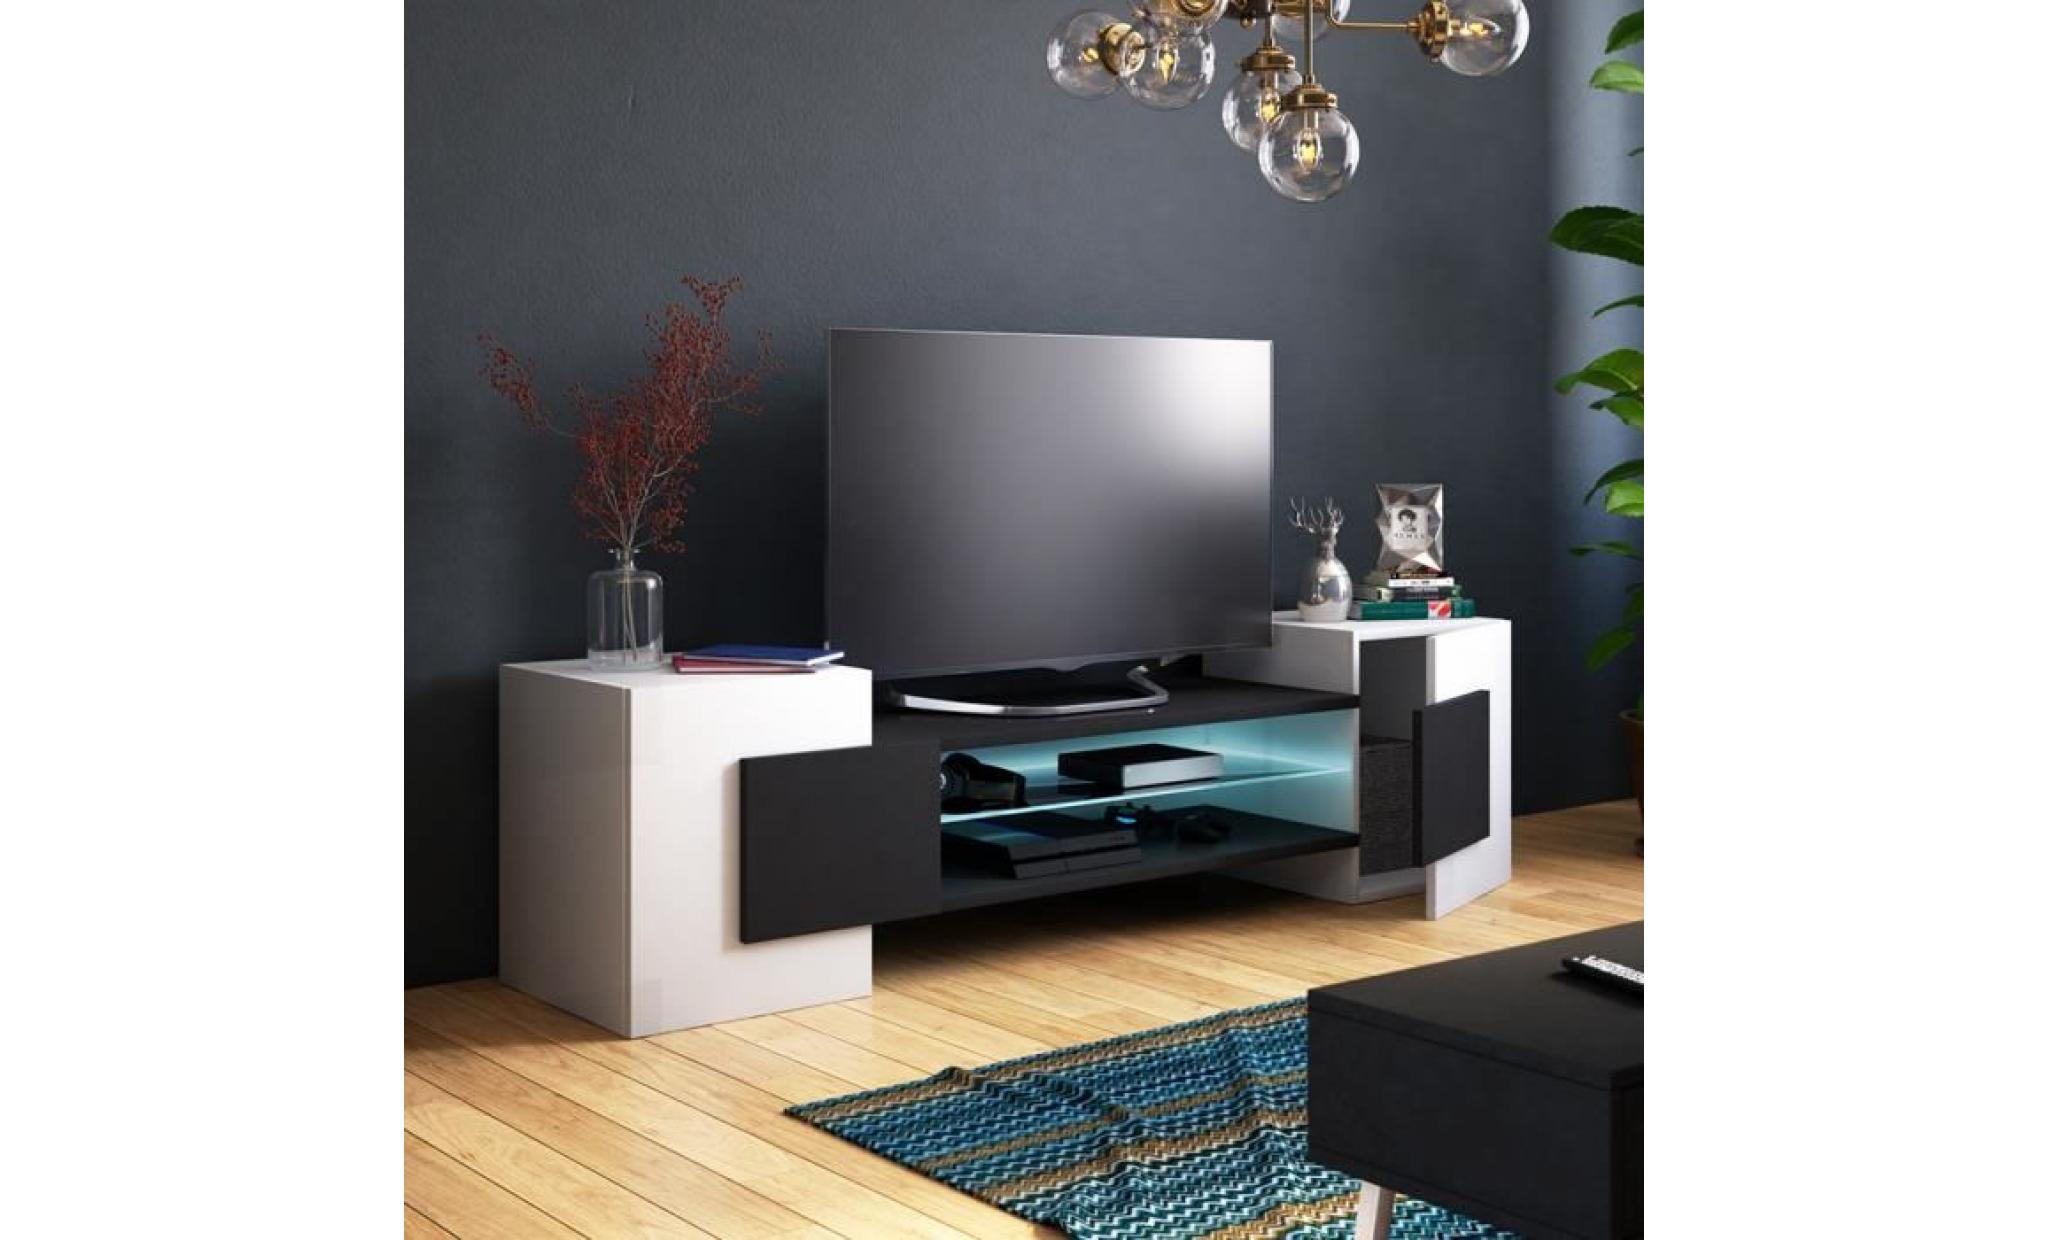 meuble tv / meuble de salon   charles   160 cm   blanc mat / béton   avec led   style contemporain   design moderne